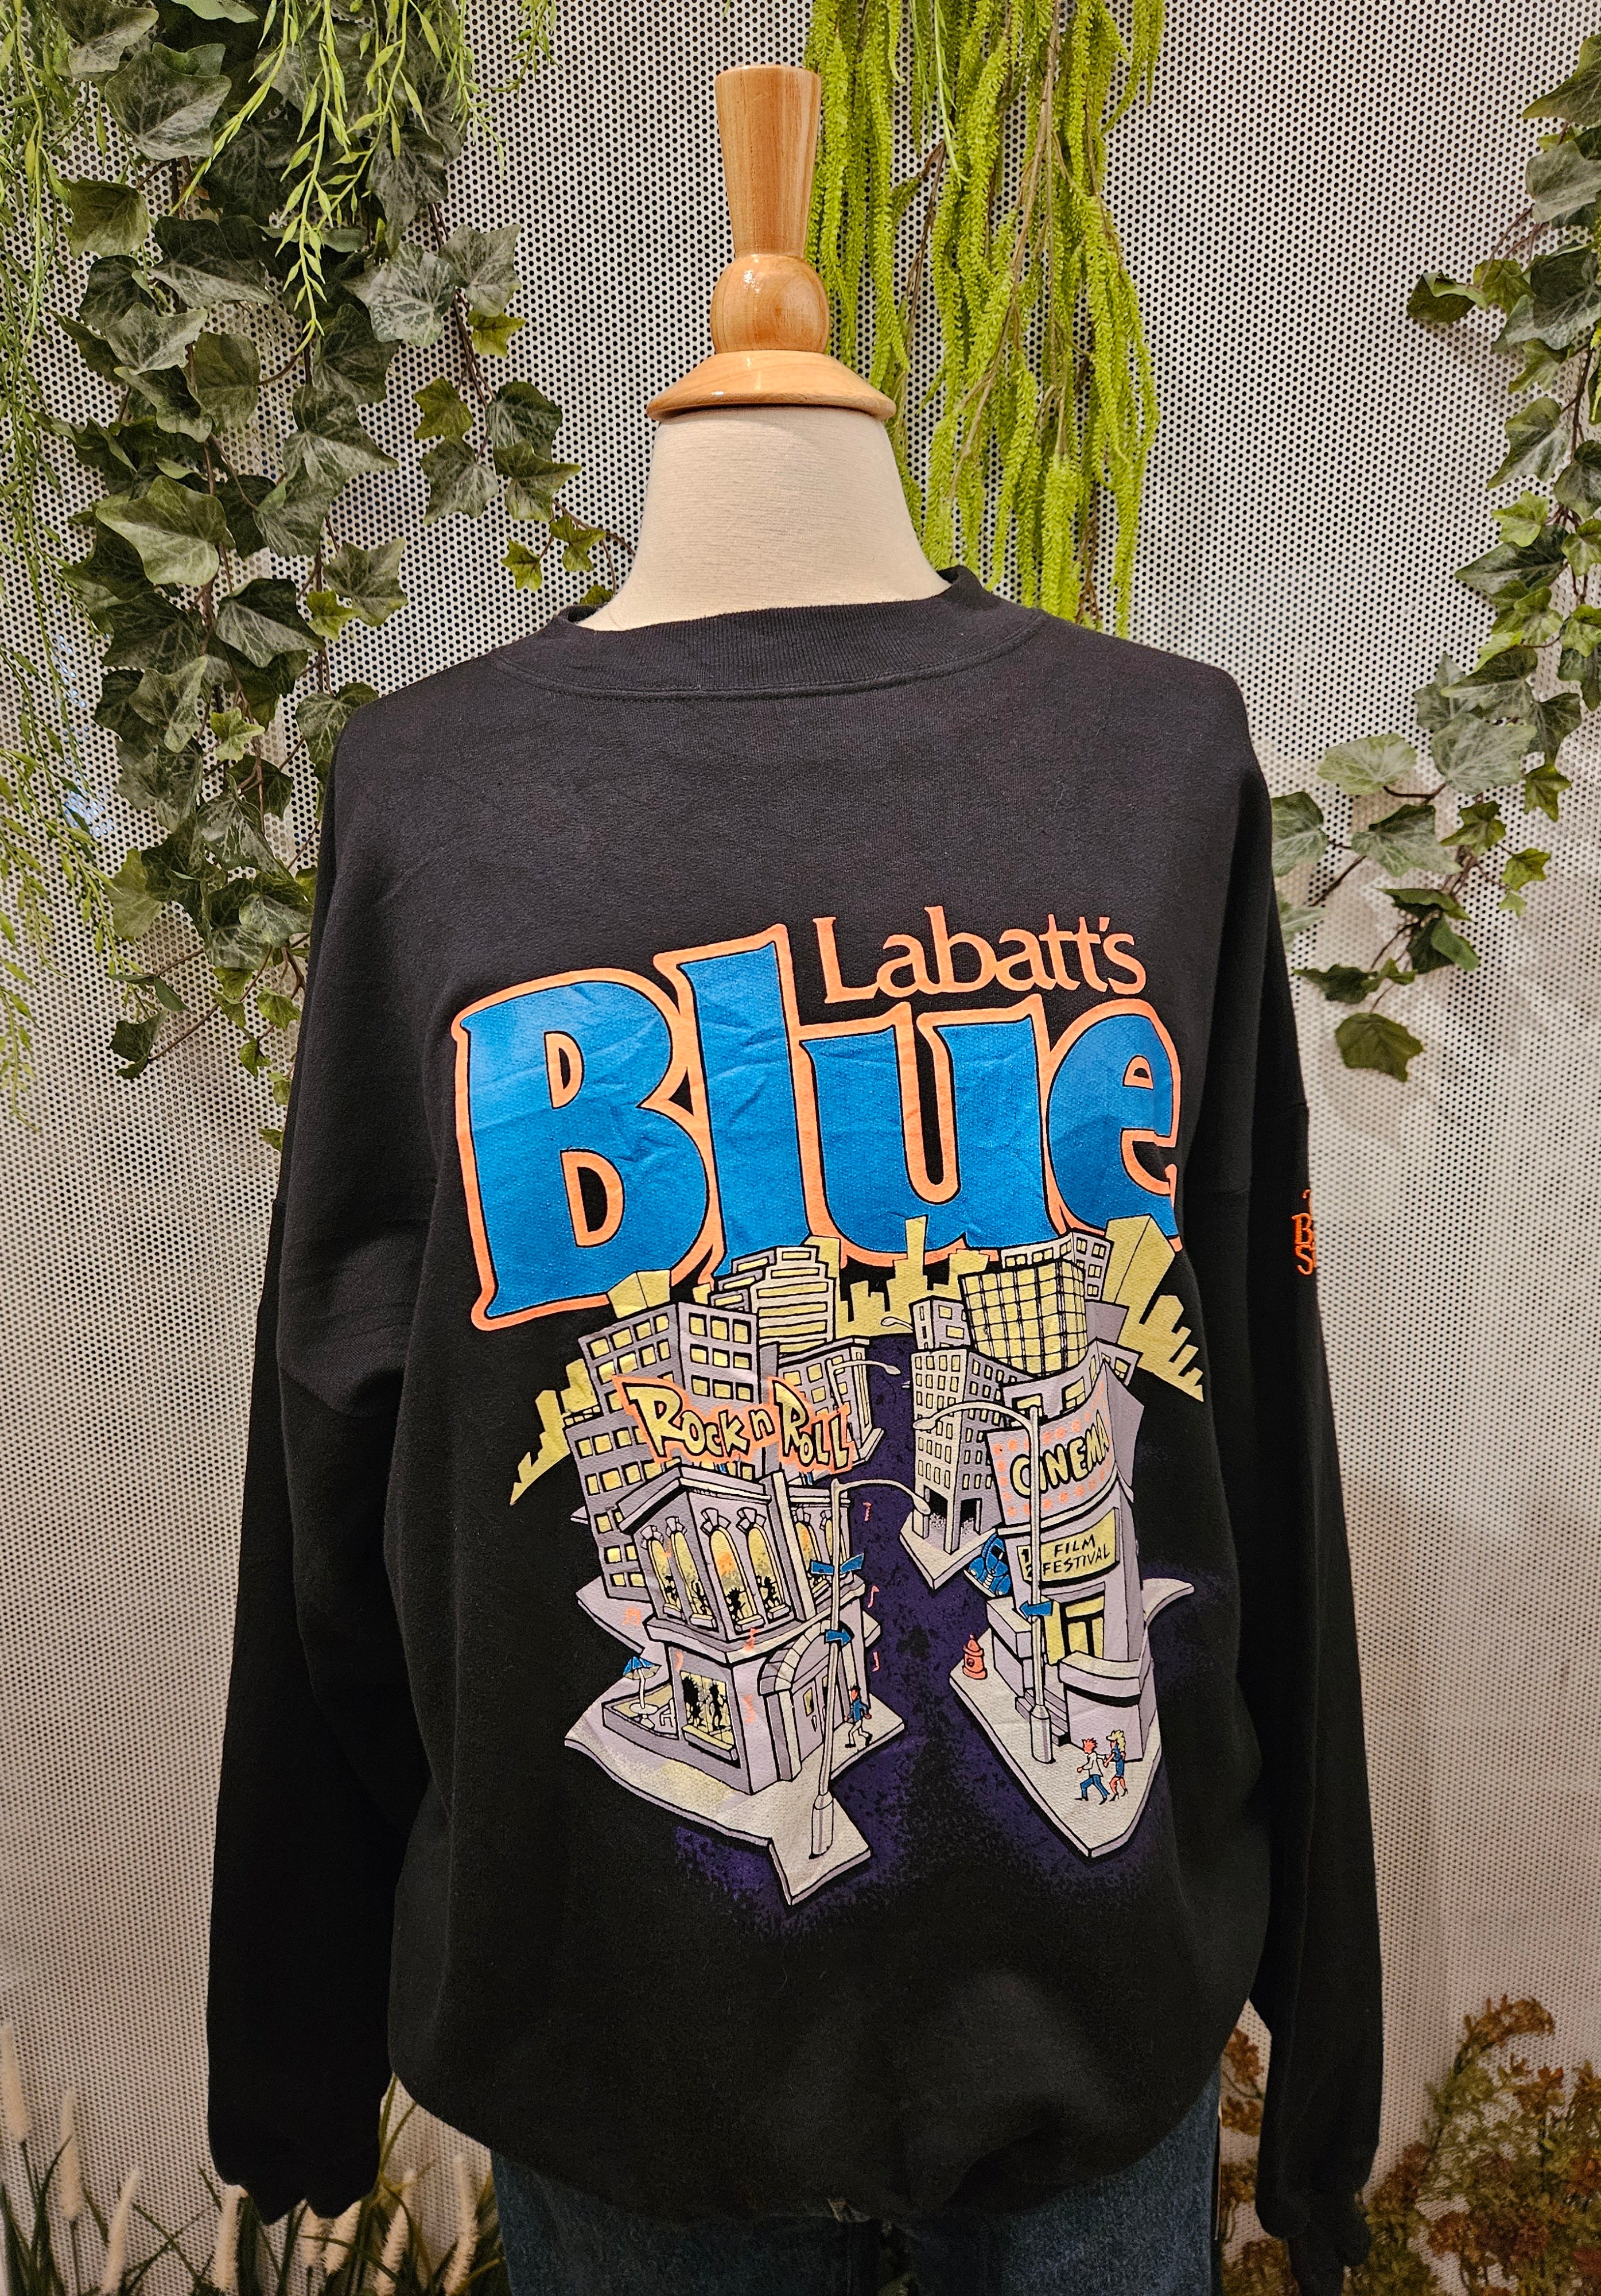 1980’s Labatt's Blue Sweatshirt